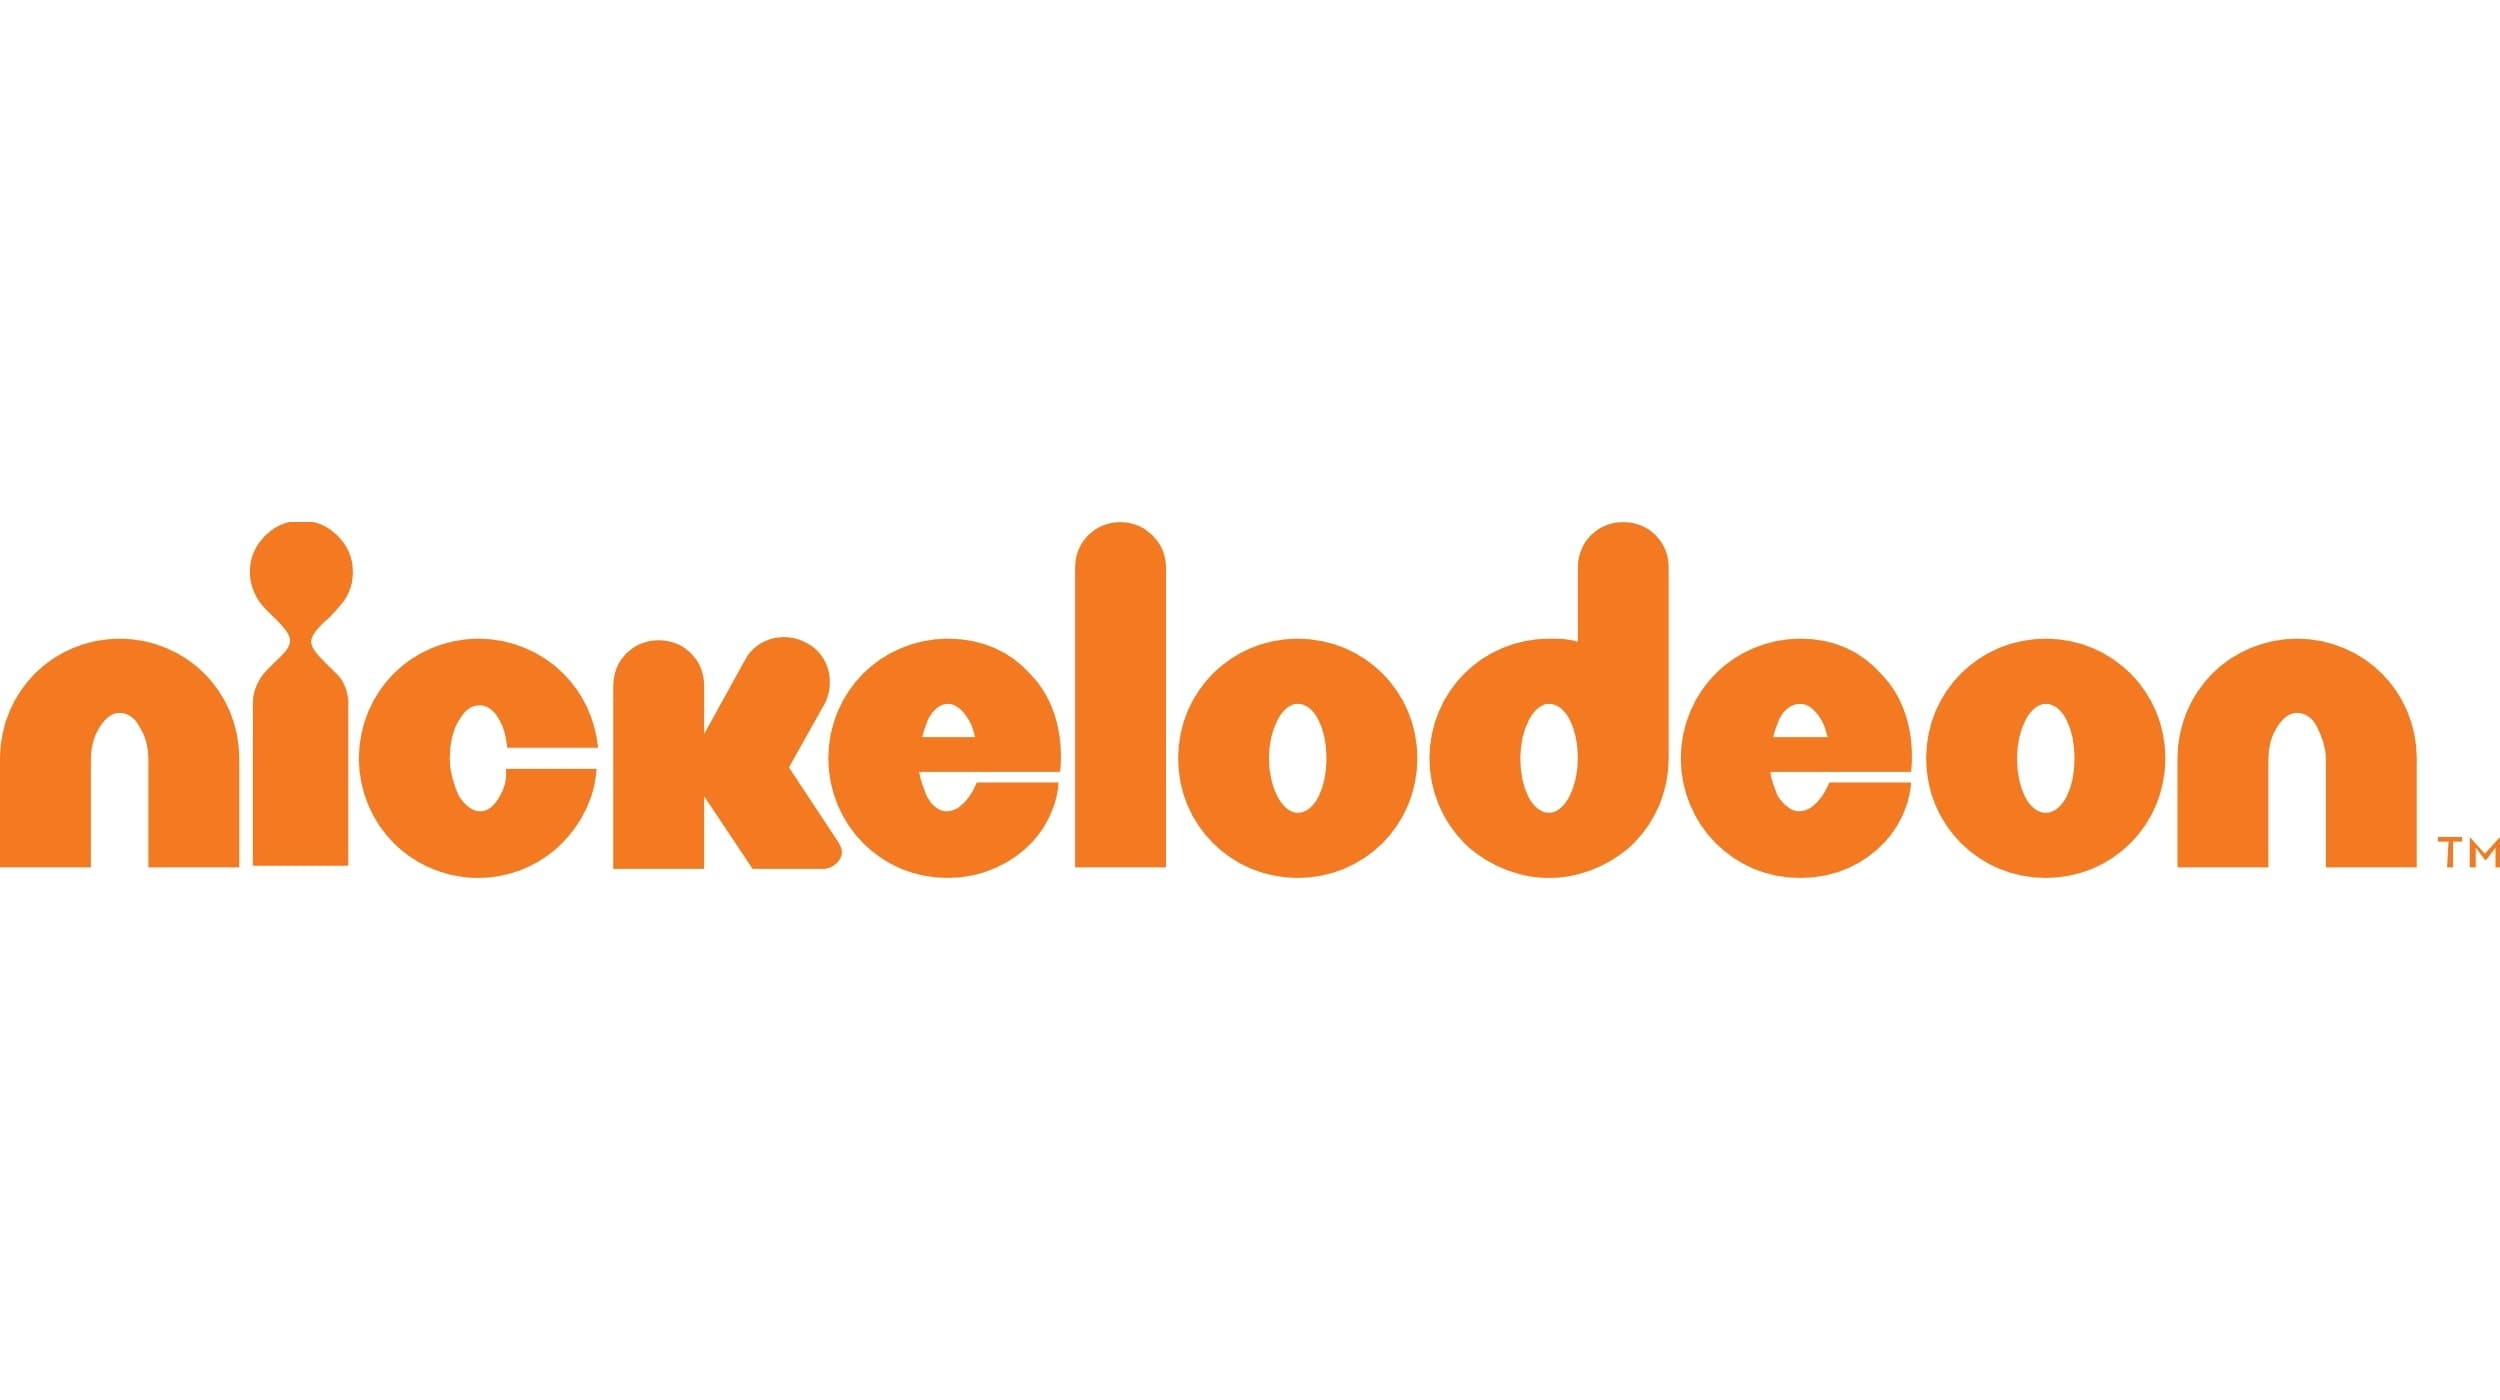 Телеканал никелодеон. Лого канала Никелодеон. Телеканал Nick логотип. Nickelodeon Россия логотип. Nickelodeon логотип прозрачный.